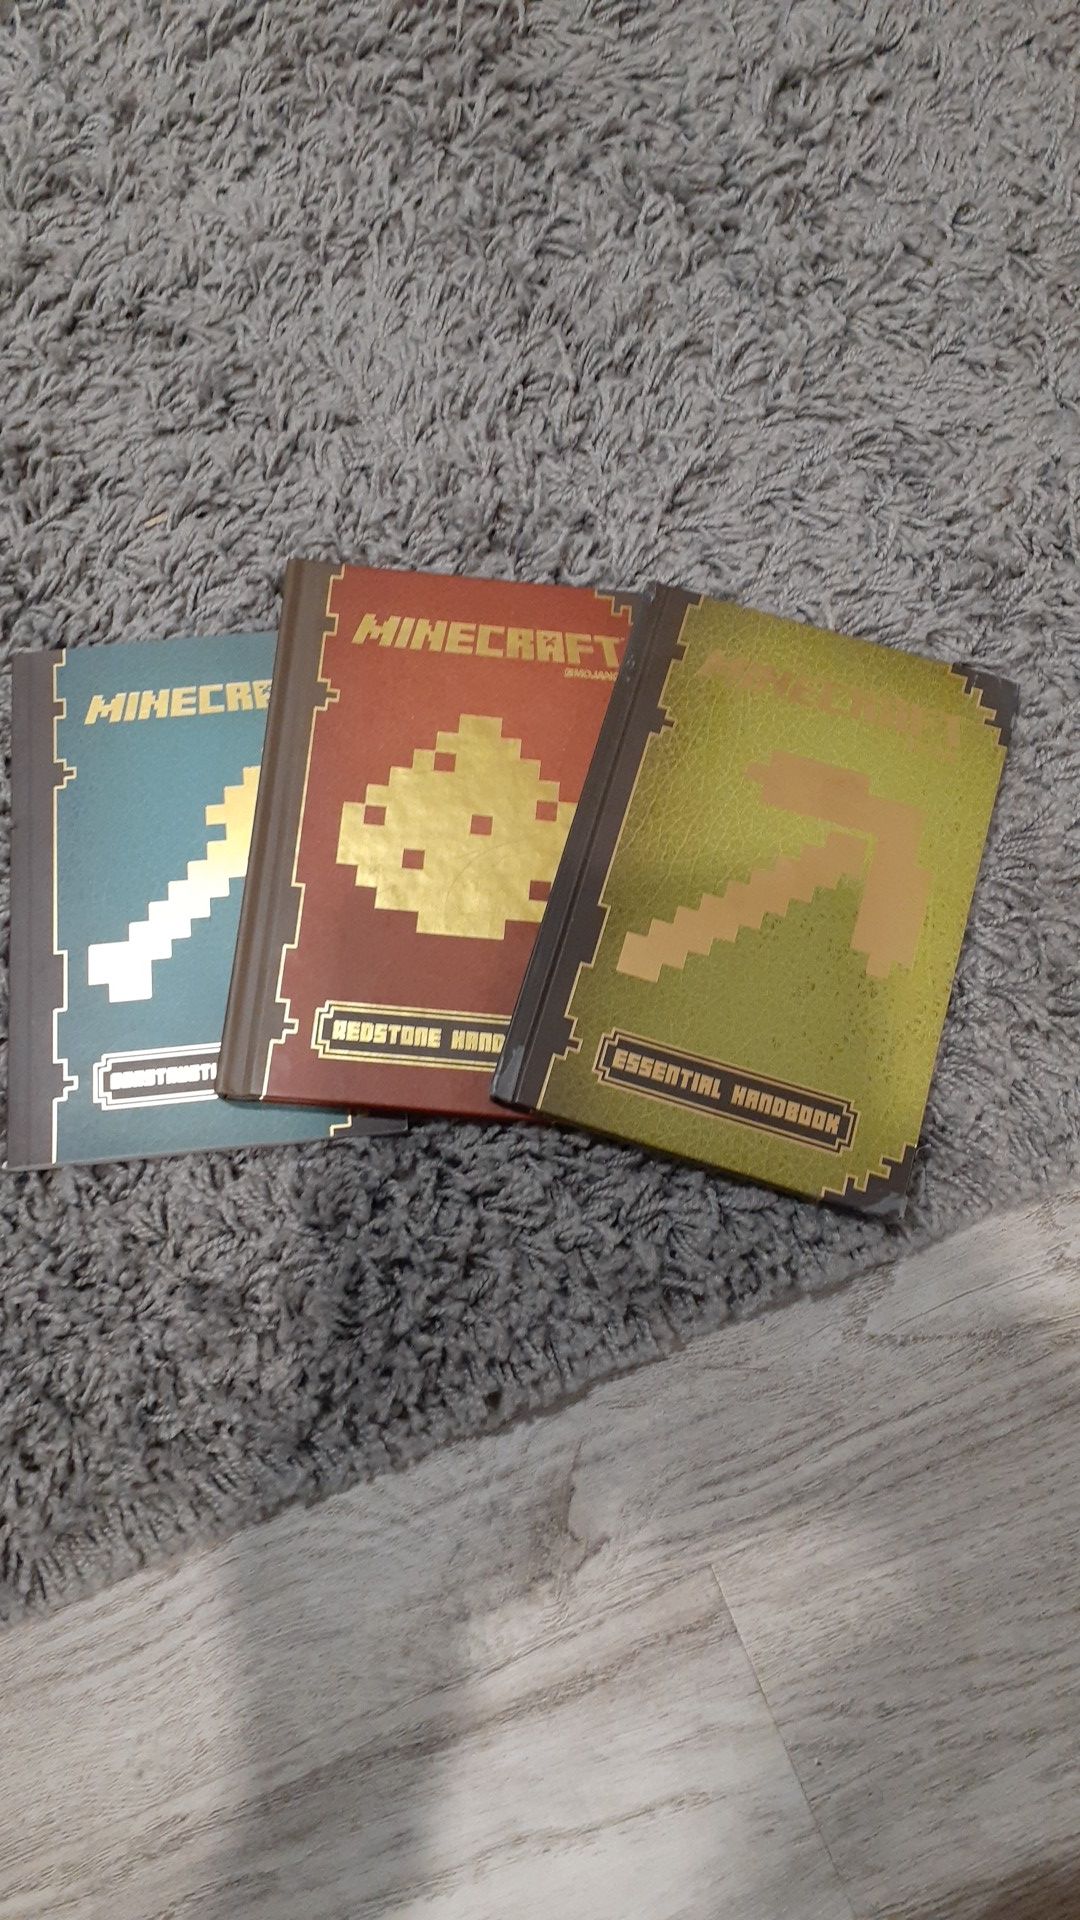 3 Minecraft handbook